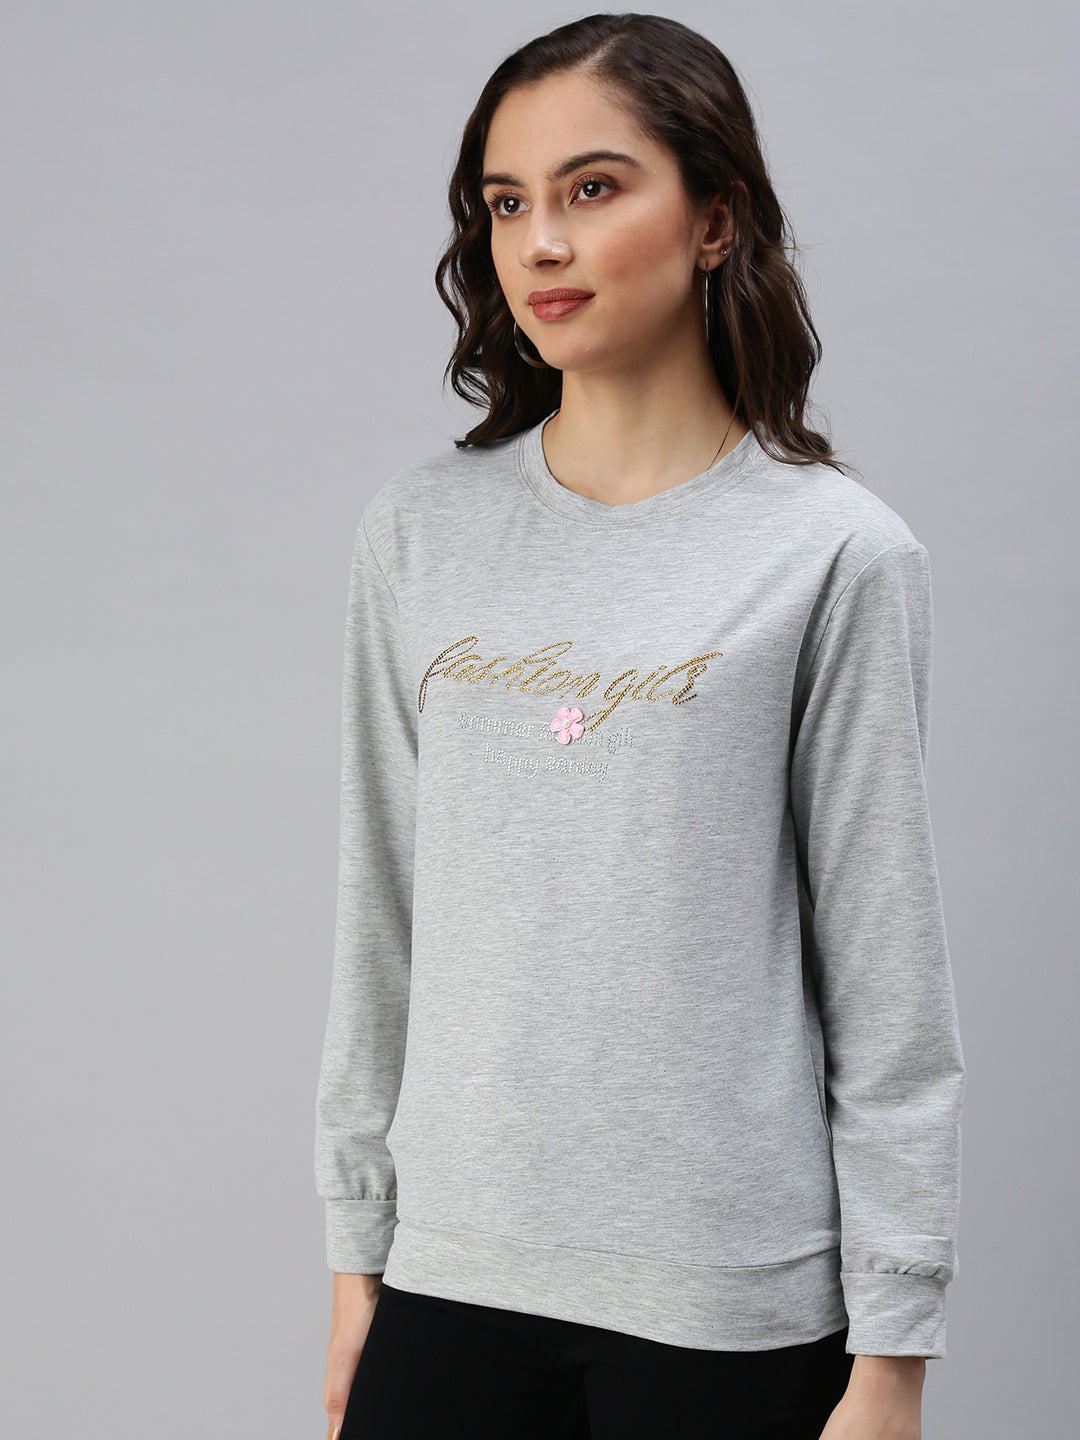 Women's Grey Solid SweatShirt